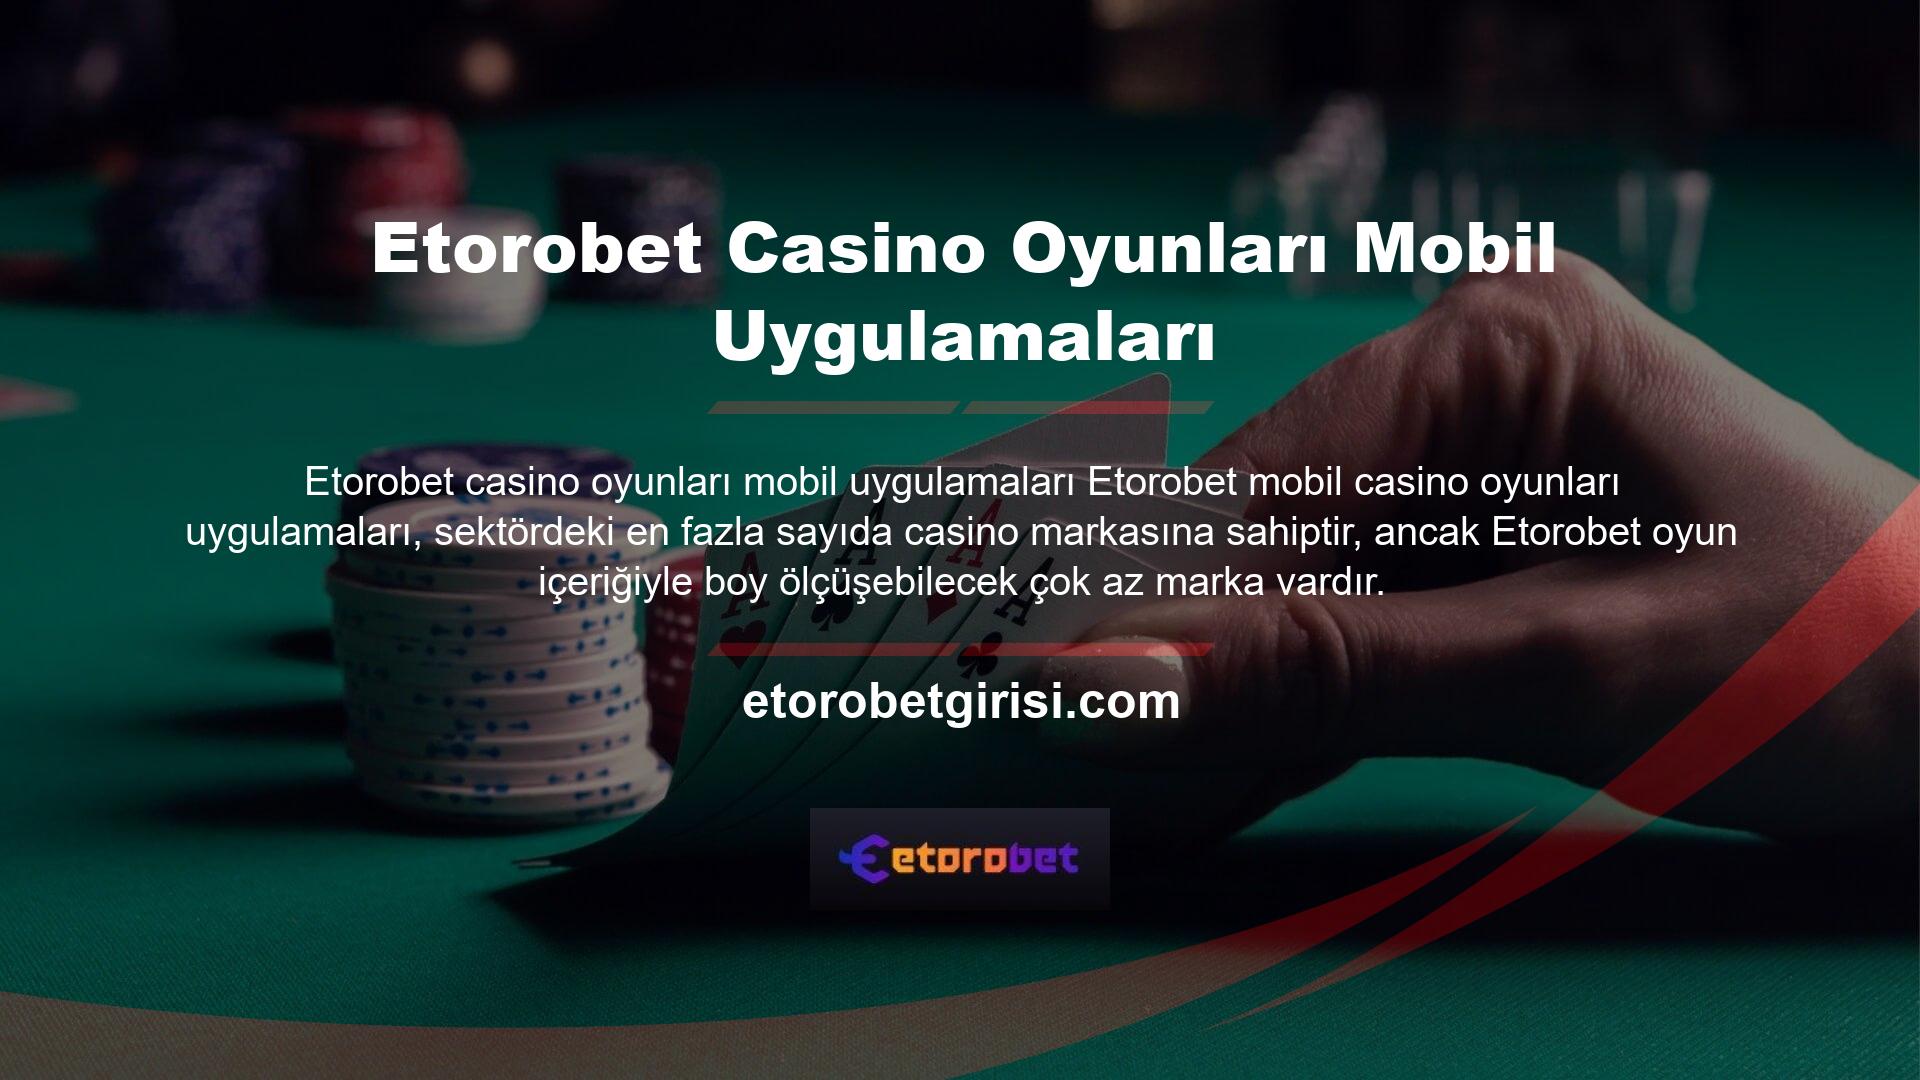 Etorobet, onlarca farklı sağlayıcıyı entegre ederek ve onları şimdiye kadarki en iyi ve en kapsamlı casino oyun içeriğiyle geliştirerek kaliteli bir casino platformunun temelini yıllar önce attı